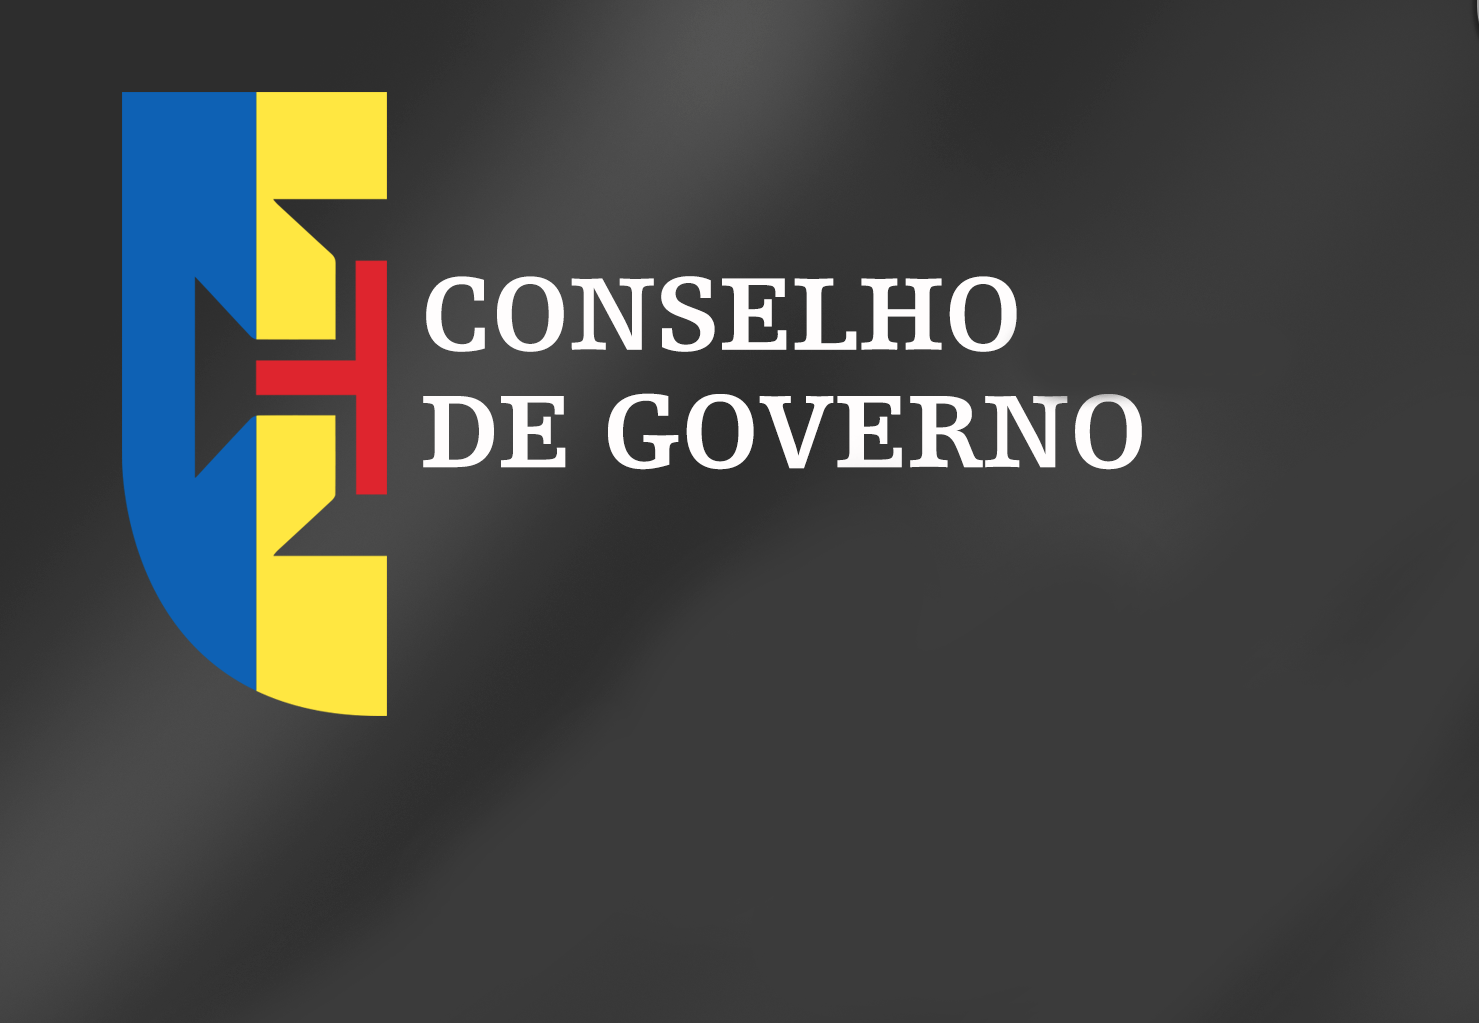 Conclusões Conselho de Governo - 08 de abril de 2020